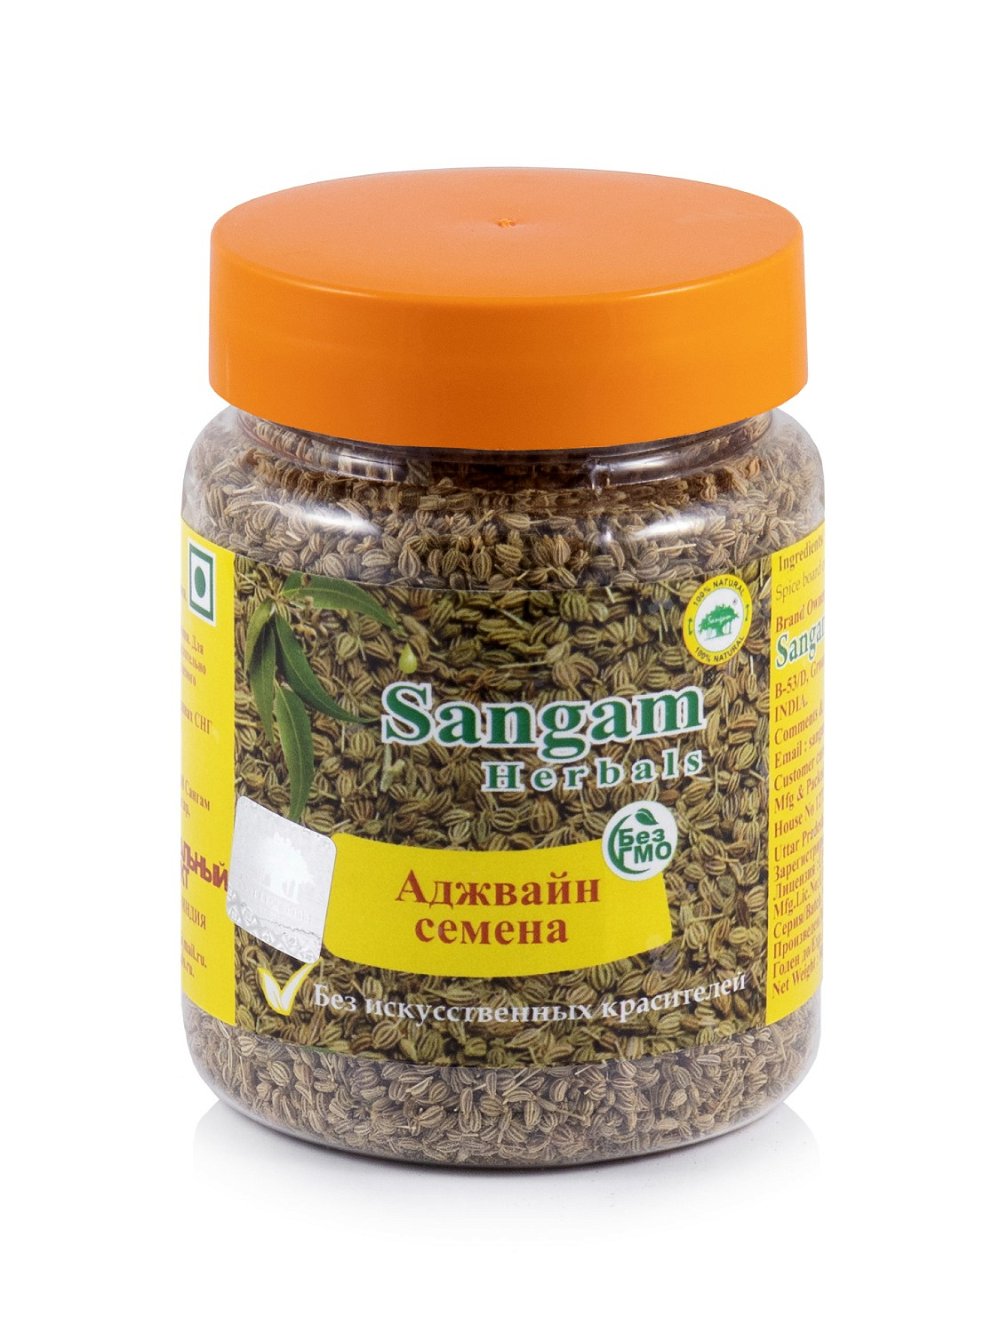 Аджвайн семена Sangam Herbals (80 г), Аджвайн семена